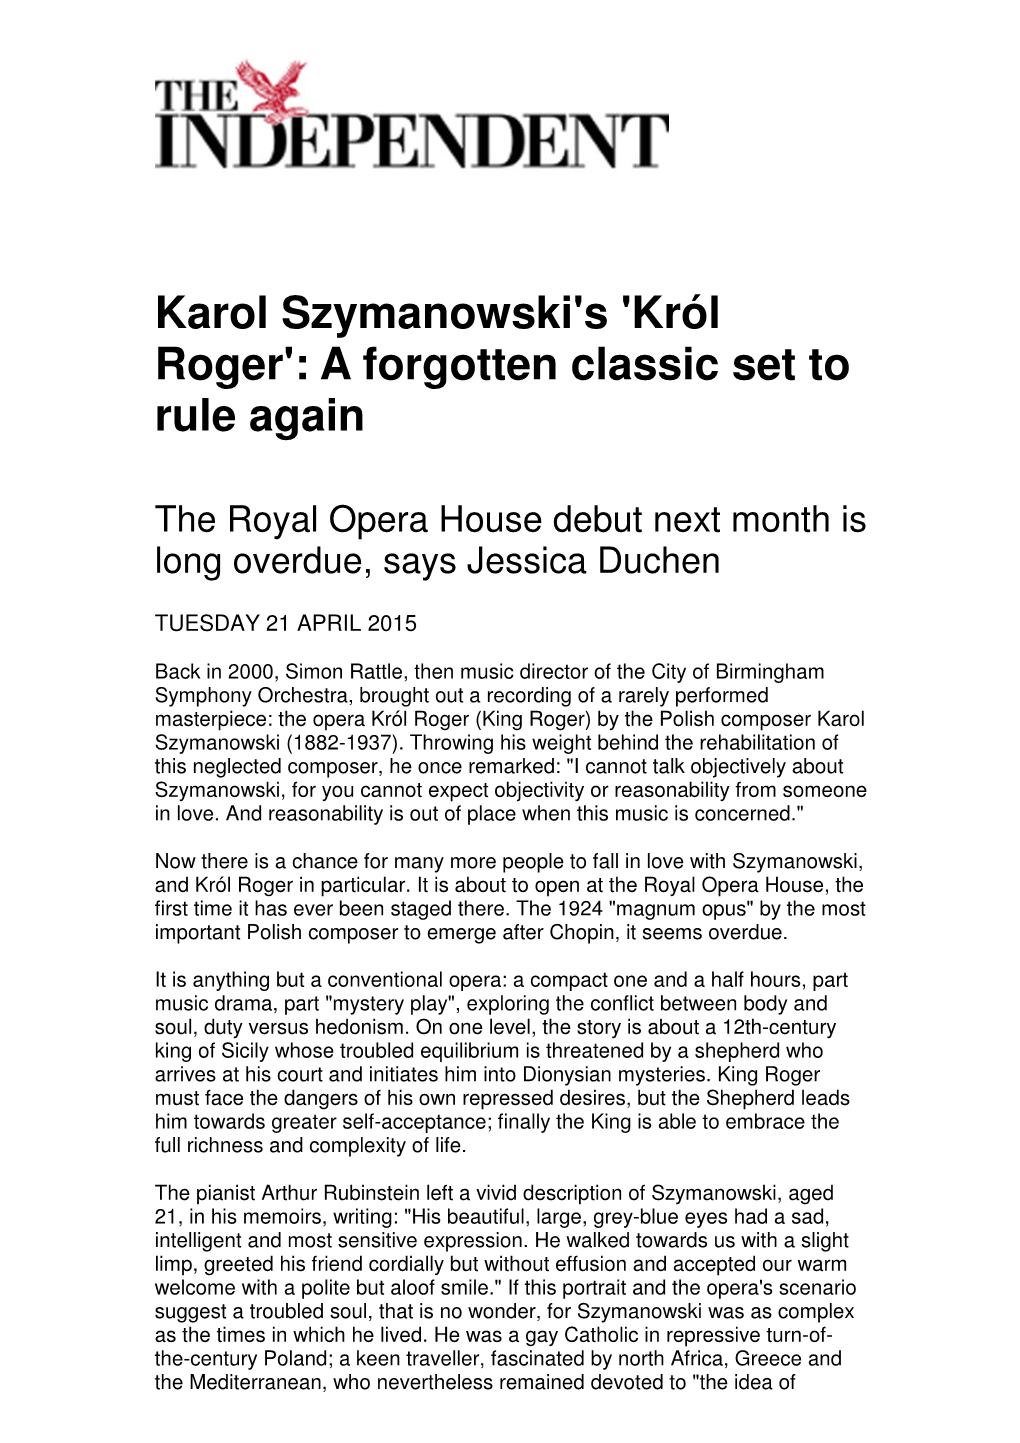 Karol Szymanowski's 'Król Roger': a Forgotten Classic Set to Rule Again